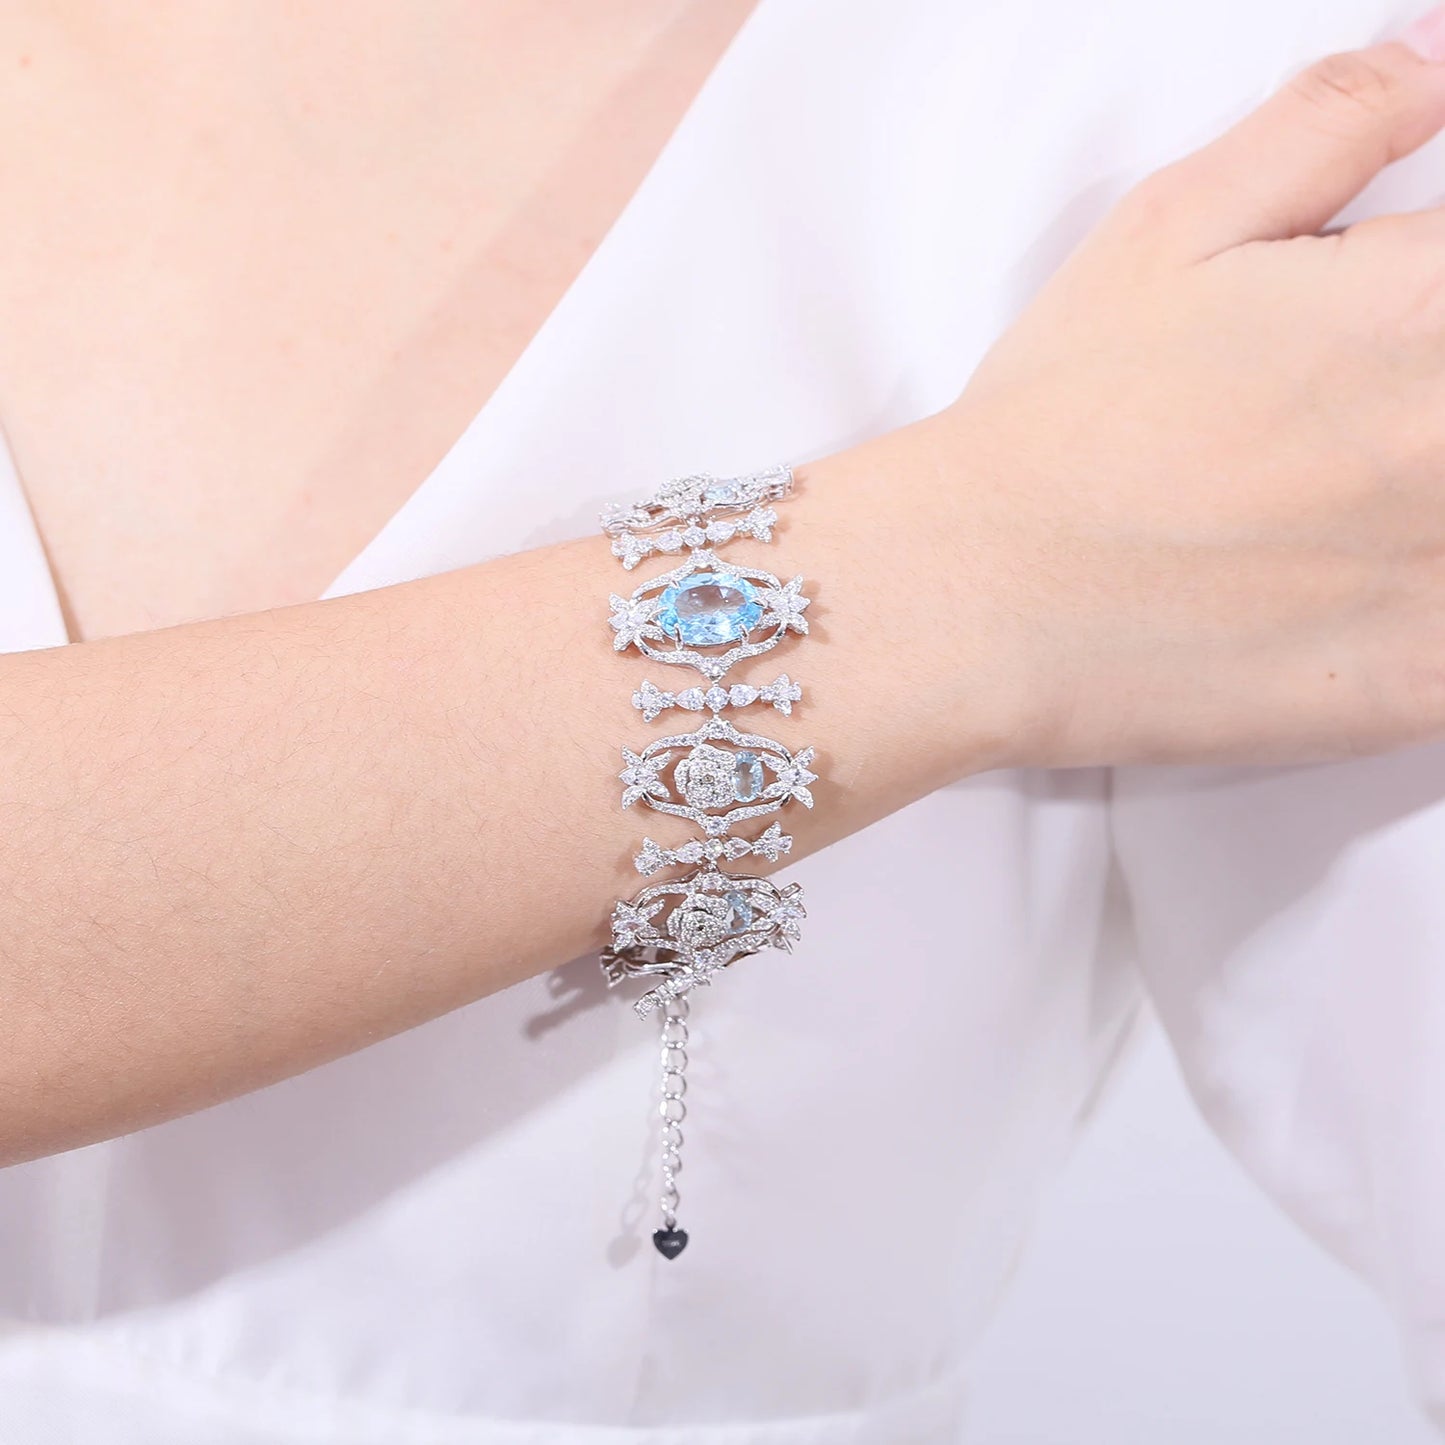 GEM'S BALLET Luxury Gemstone Bracelet Natural Sky Blue Topaz Vintage Bracelet Bangle in 925 Sterling Silver Prom Bridesmaid gift